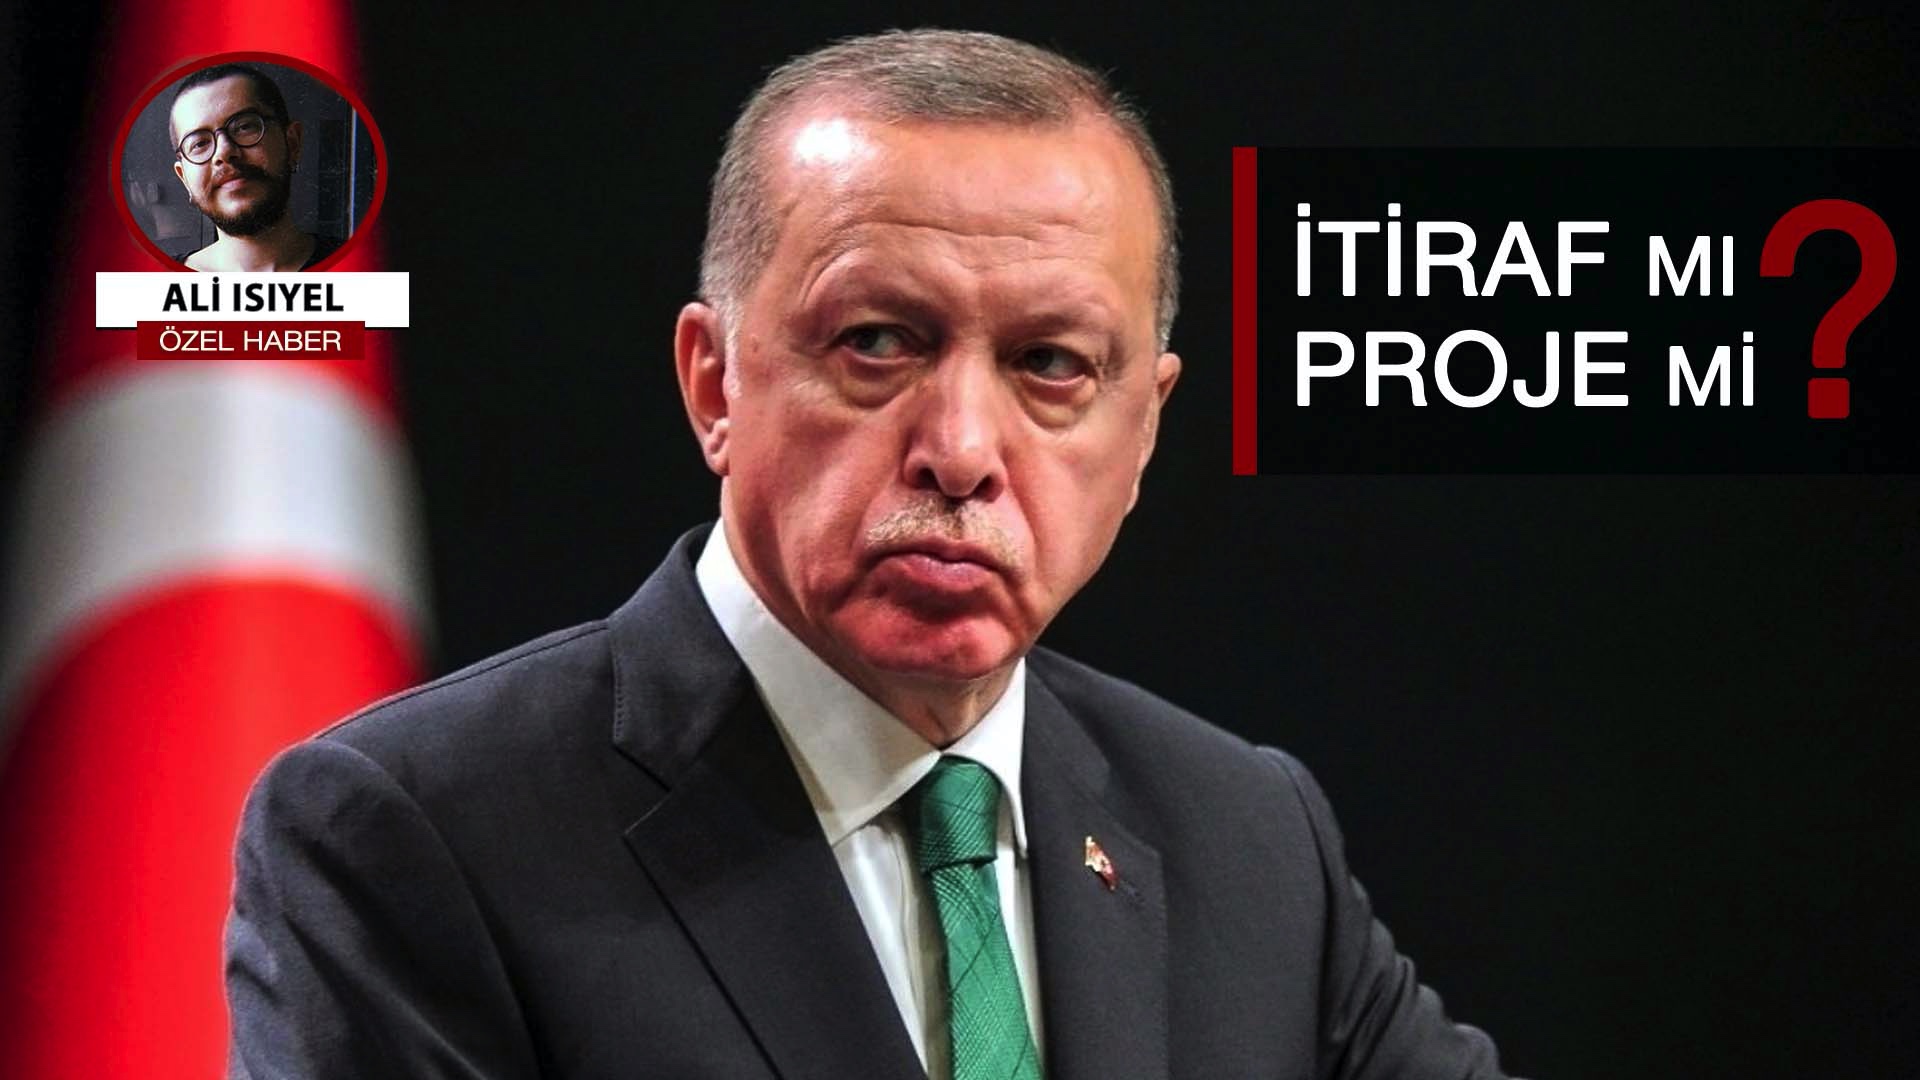 AKP'nin 'eğitim' projesi: Erdoğan'ın sözlerinin altında yatan gerçek...